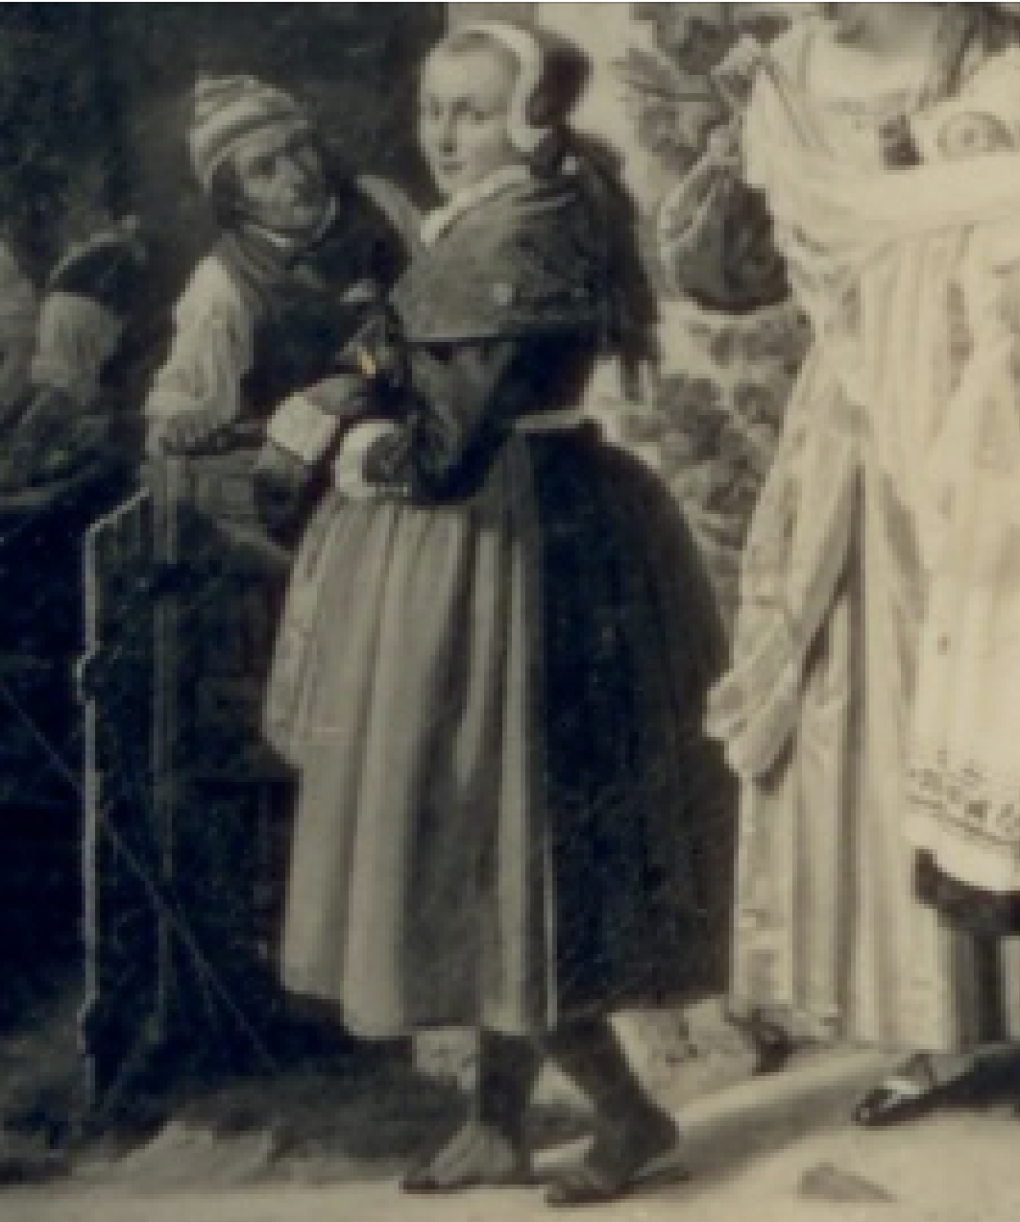 Ludwig Most, Młoda chłopka, fragment obrazu Chrzest dziecka w pomorskiej wsi, 1840, olej, płótno zbiory prywatne; zdjęcie archiwalne w Muzeum Narodowym w Szczecinie